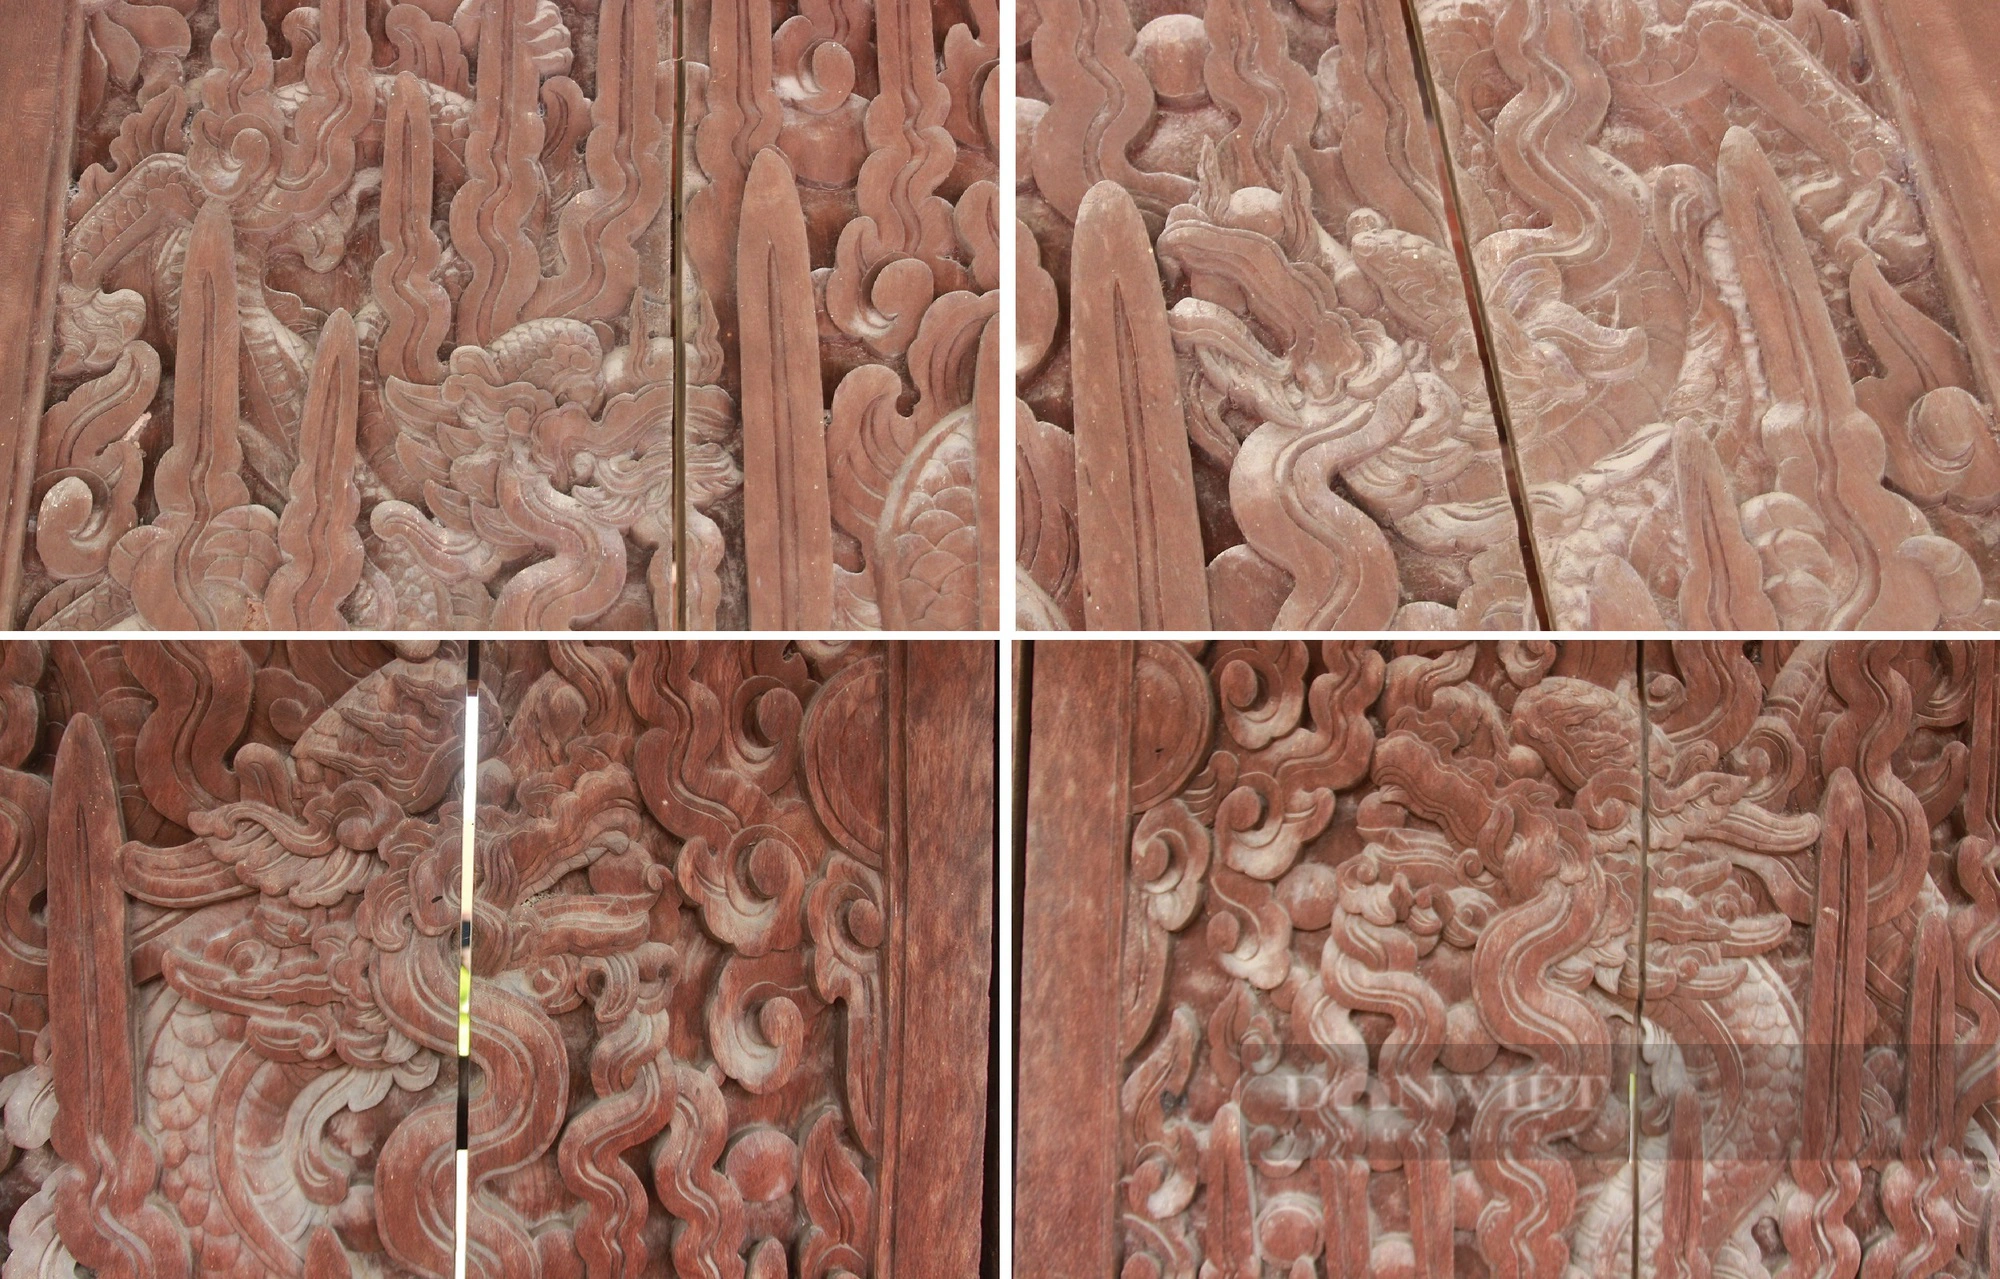 Bộ cánh cửa “lưỡng long chầu nhật” của chùa Keo ở Thái Bình là bảo vật Quốc gia có gì đặc biệt?- Ảnh 5.